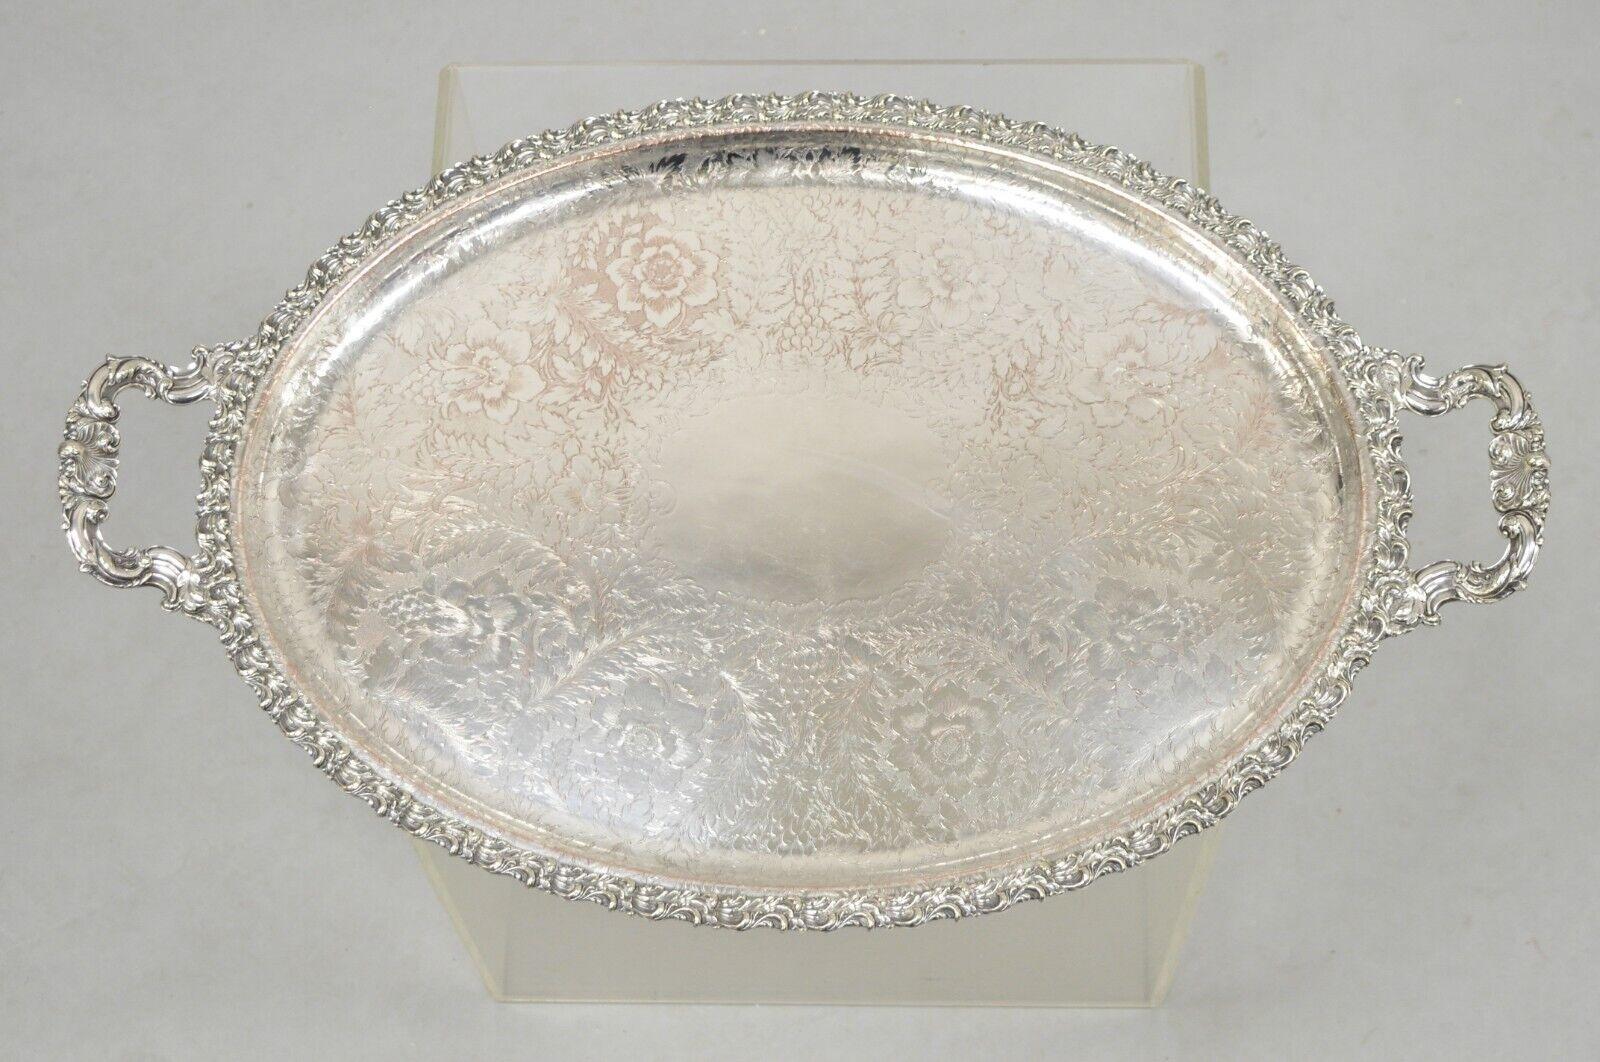 Antique English Victorian Art Nouveau Floral Repousse Oval Serving Platter Tray For Sale 7